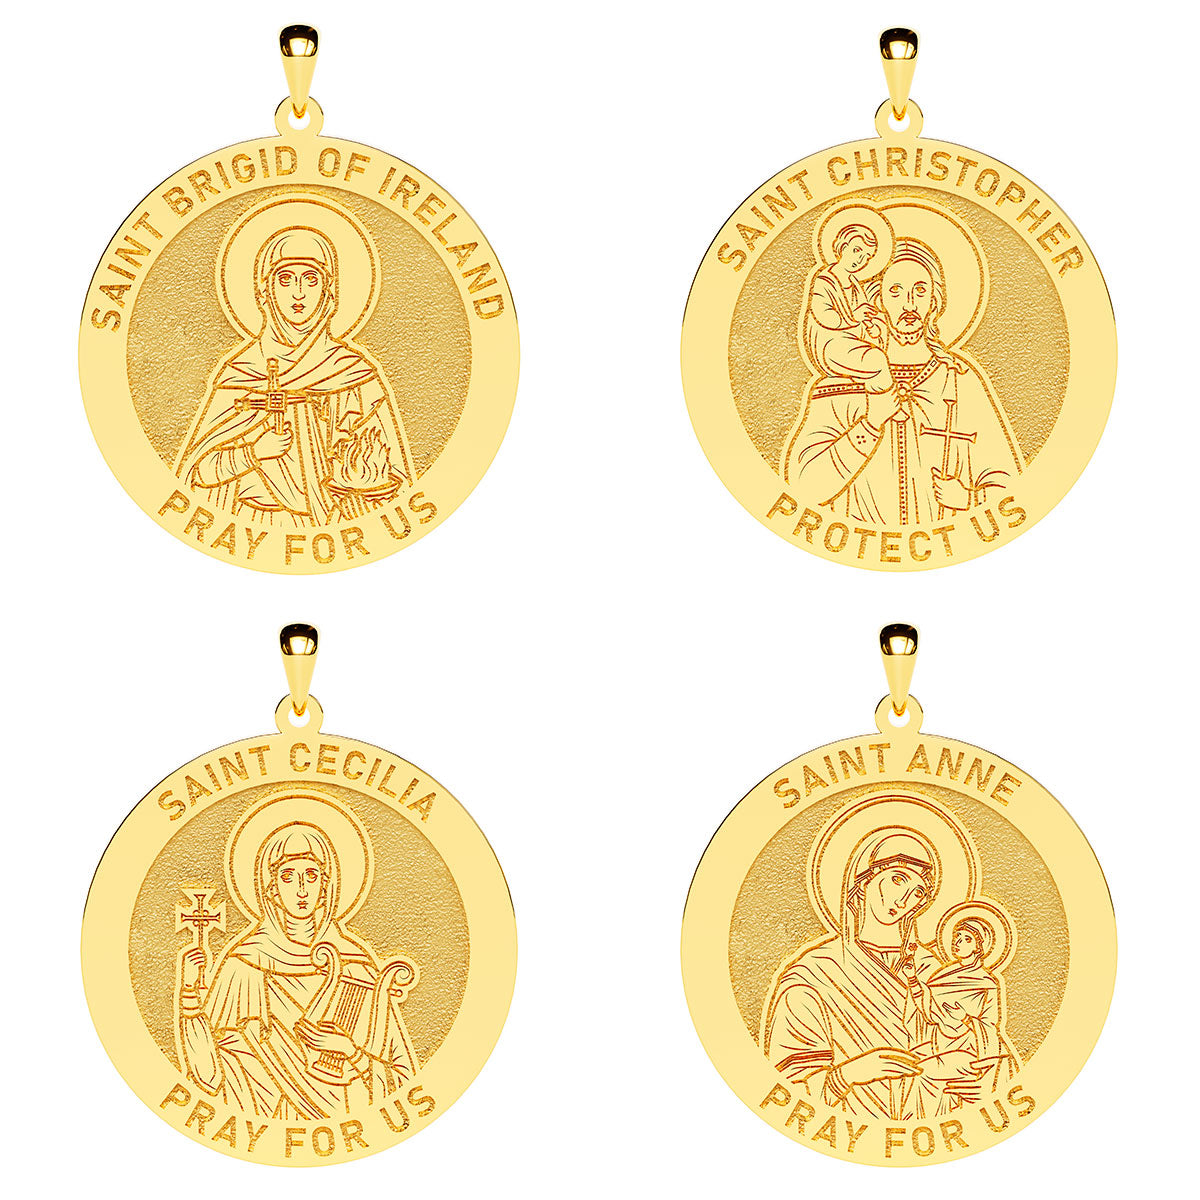 Create Your Saint - Custom Saint Round Medal